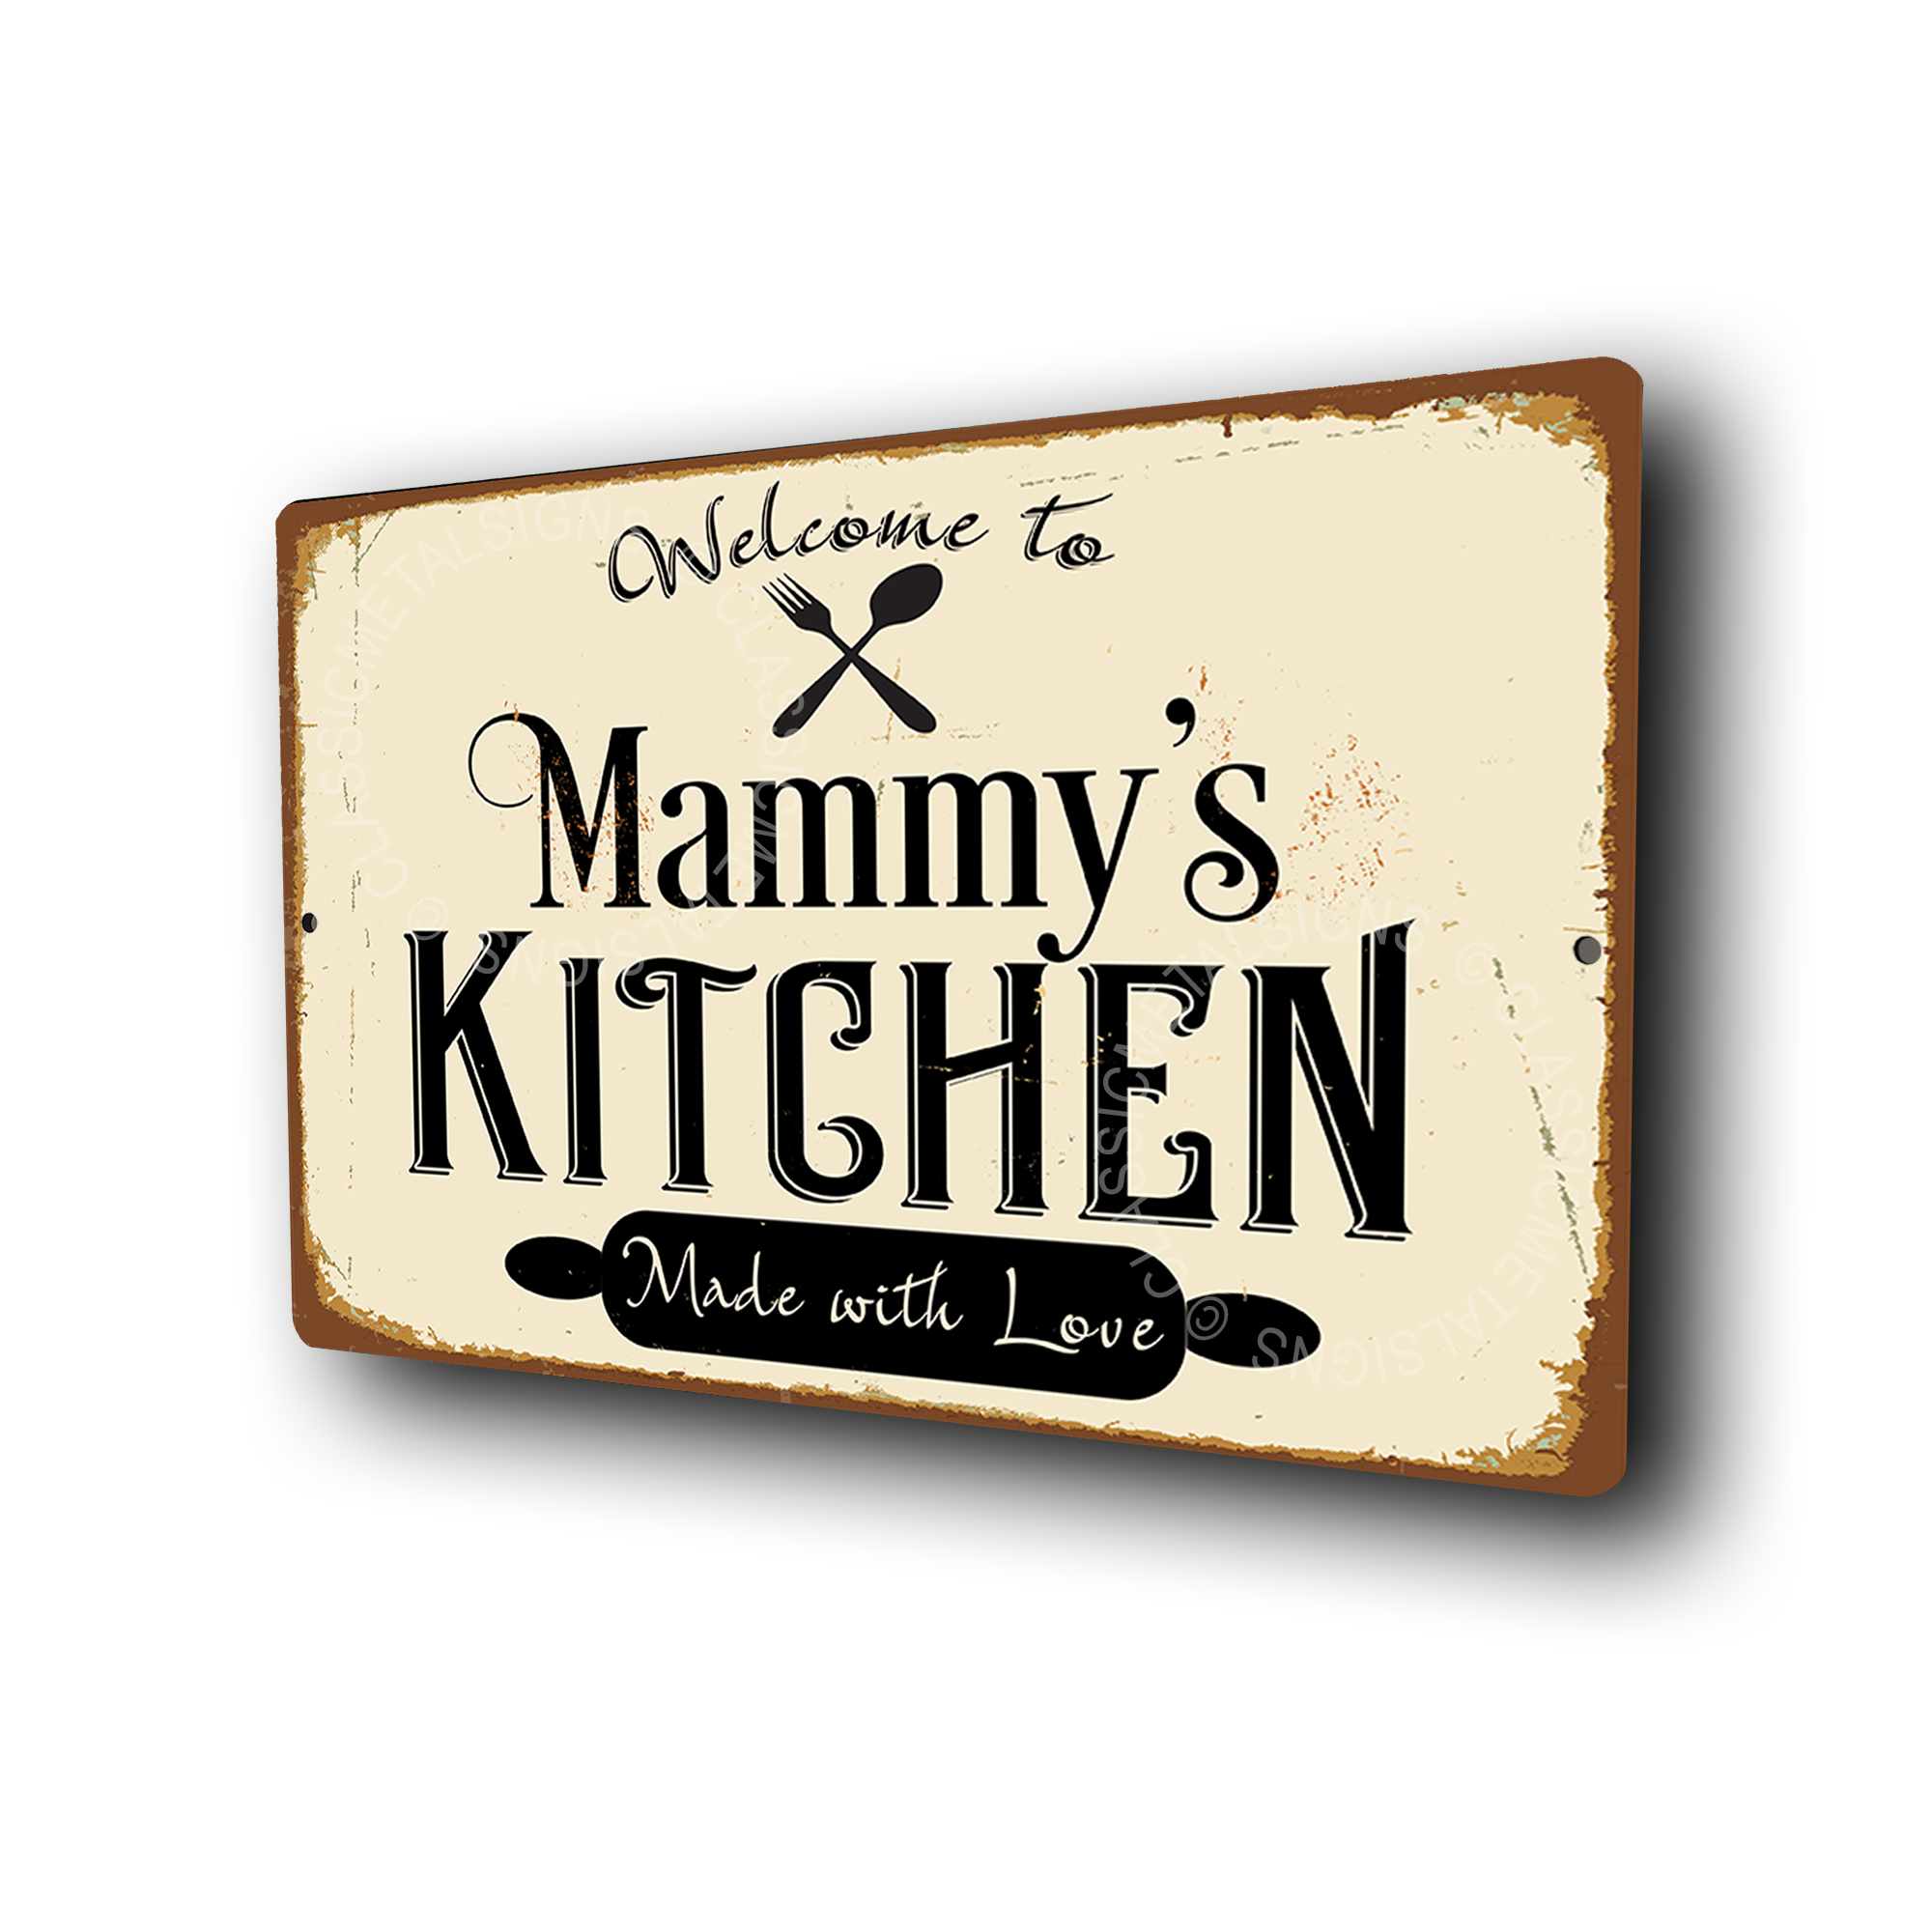 Mammy's Kitchen Signs